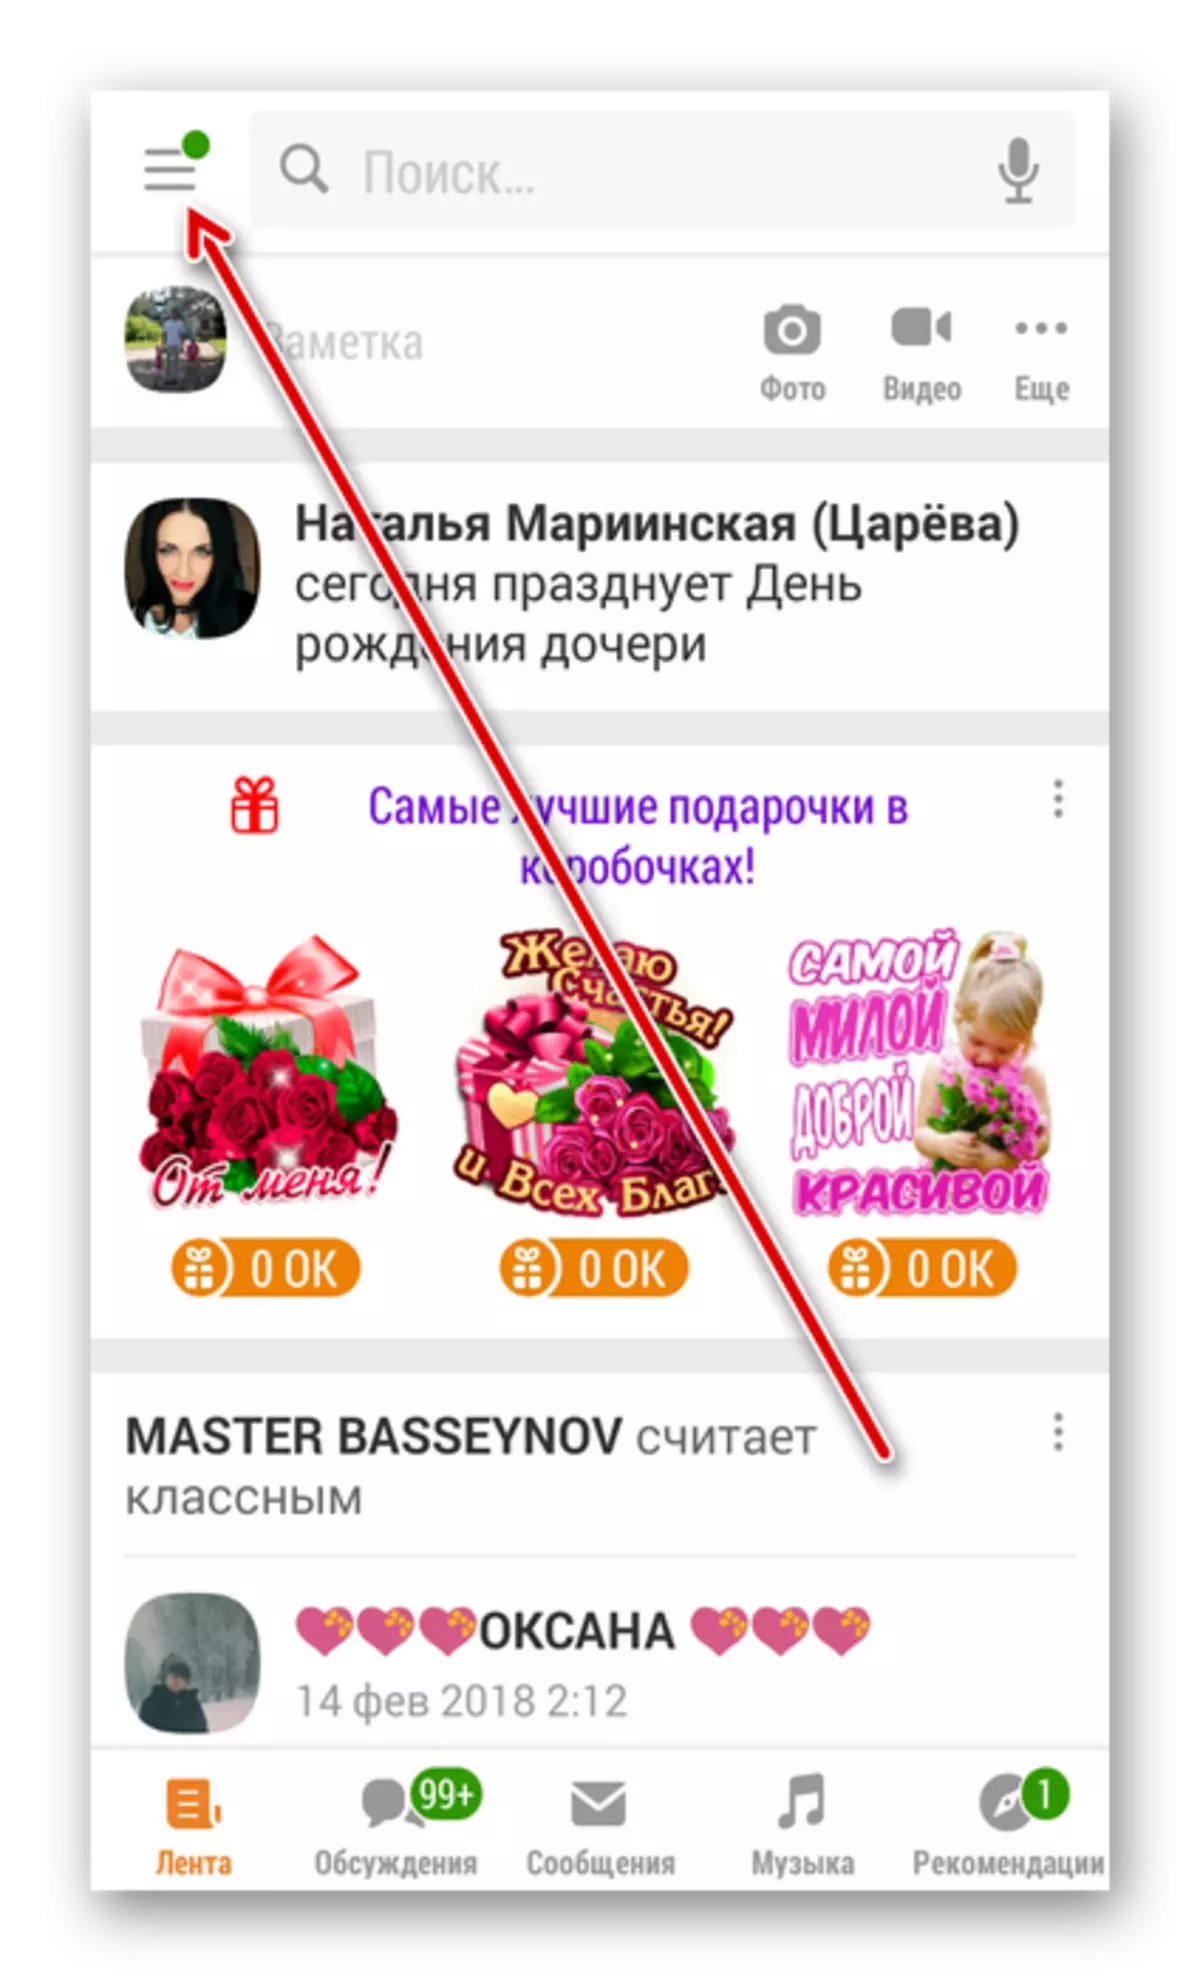 כפתור ראשי ביישום Odnoklassniki